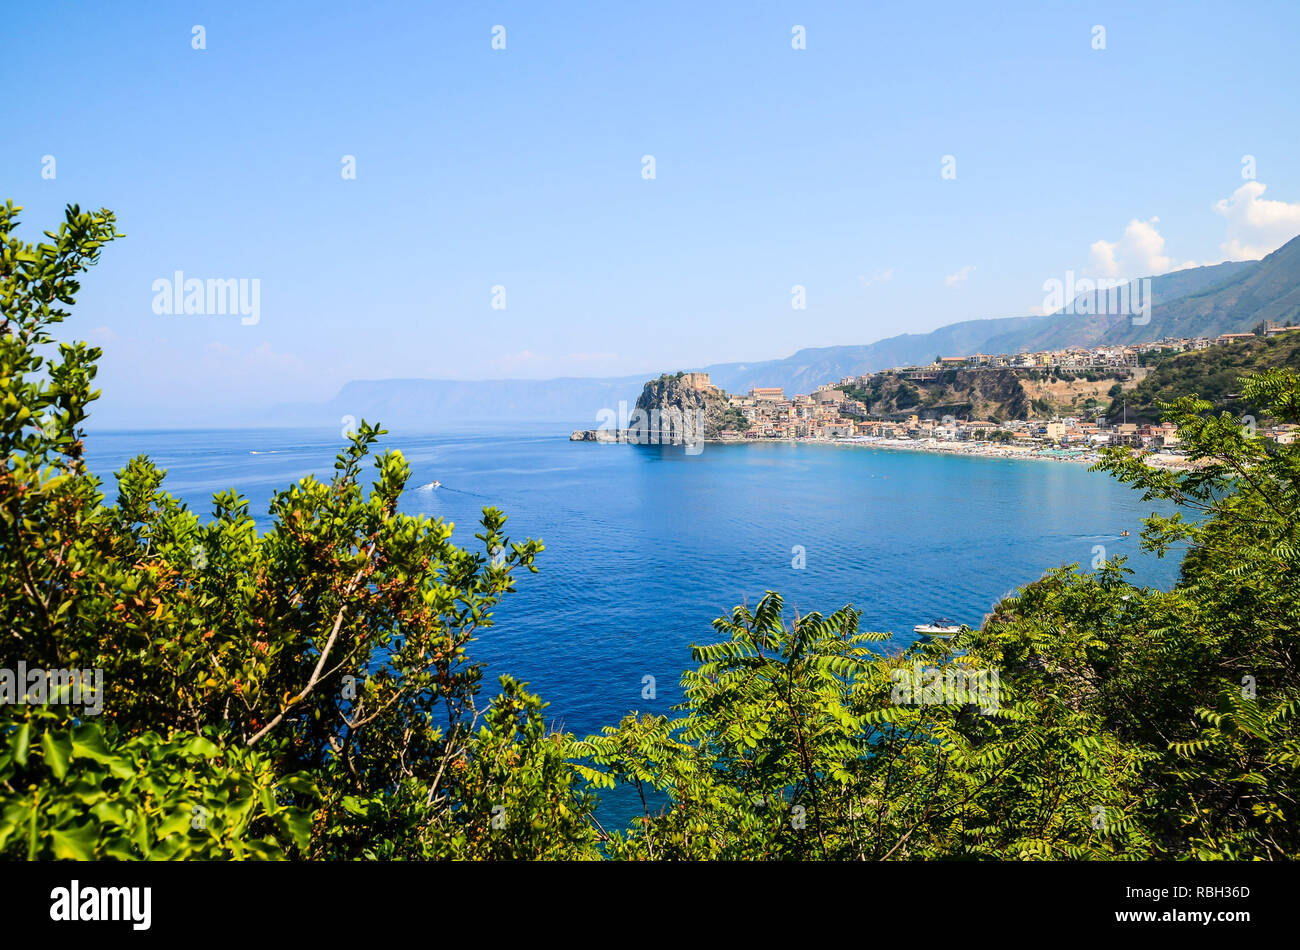 Vue panoramique de la ville balnéaire de Scilla, la Calabre, l'emplacement traditionnel de la mer de la mythologie grecque, Scylla monstre Banque D'Images